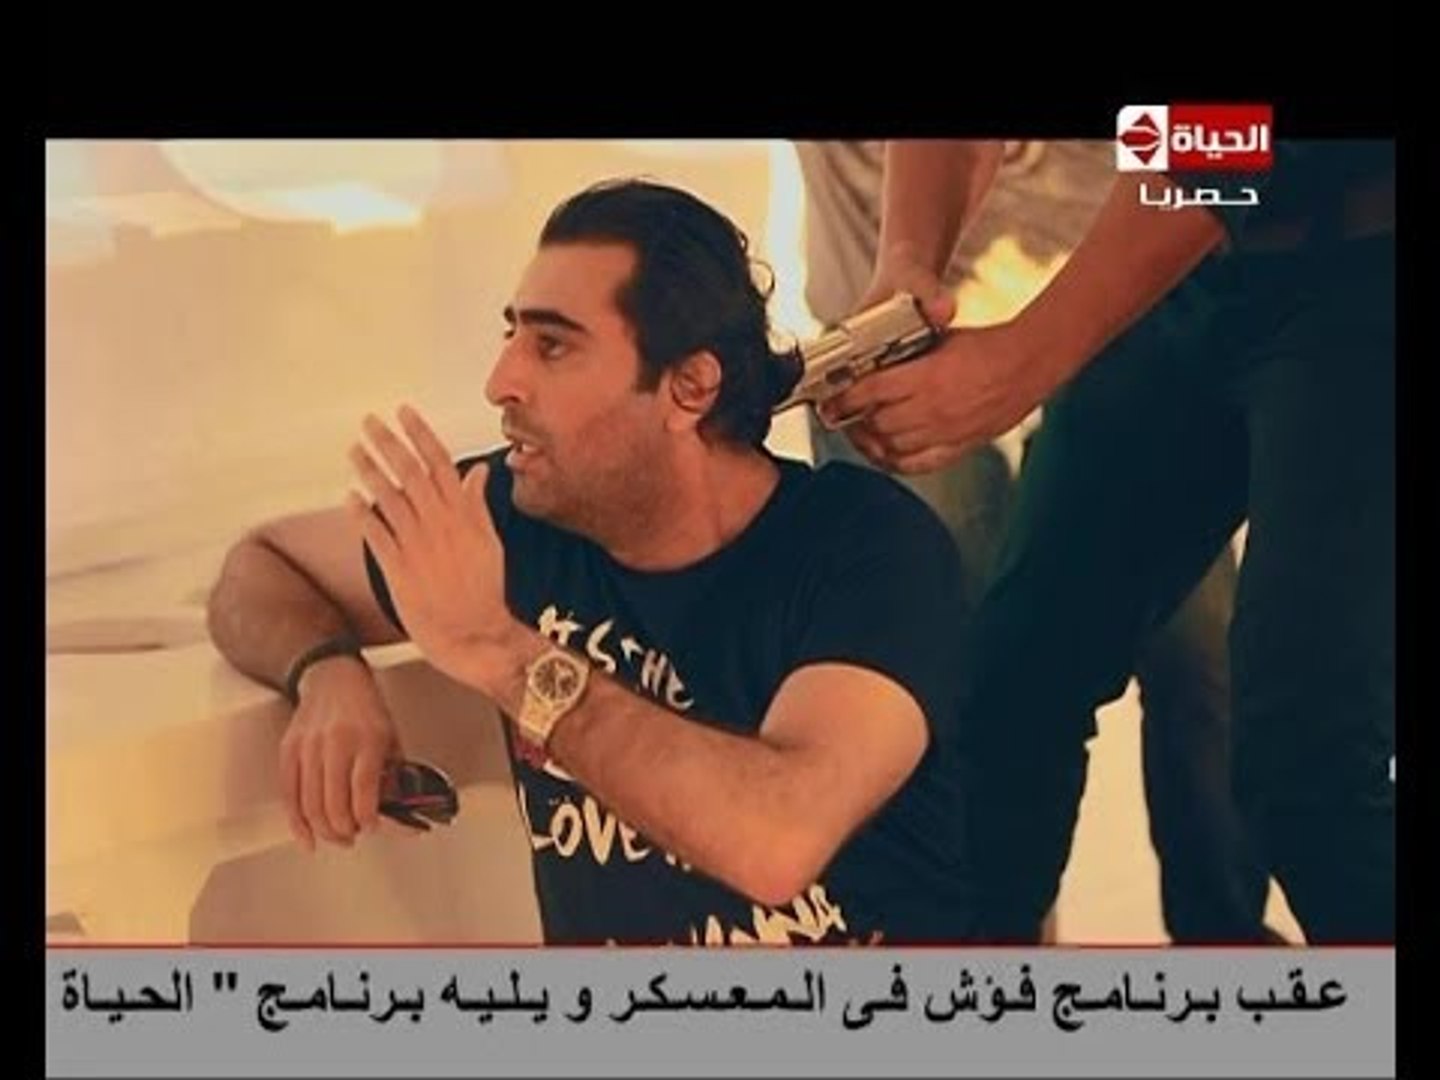 فؤش في المعسكر - الحلقة التاسعة ( 9 ) الضحية الفنان السورى باسم ياخور -  Foesh fel moaskar - video Dailymotion